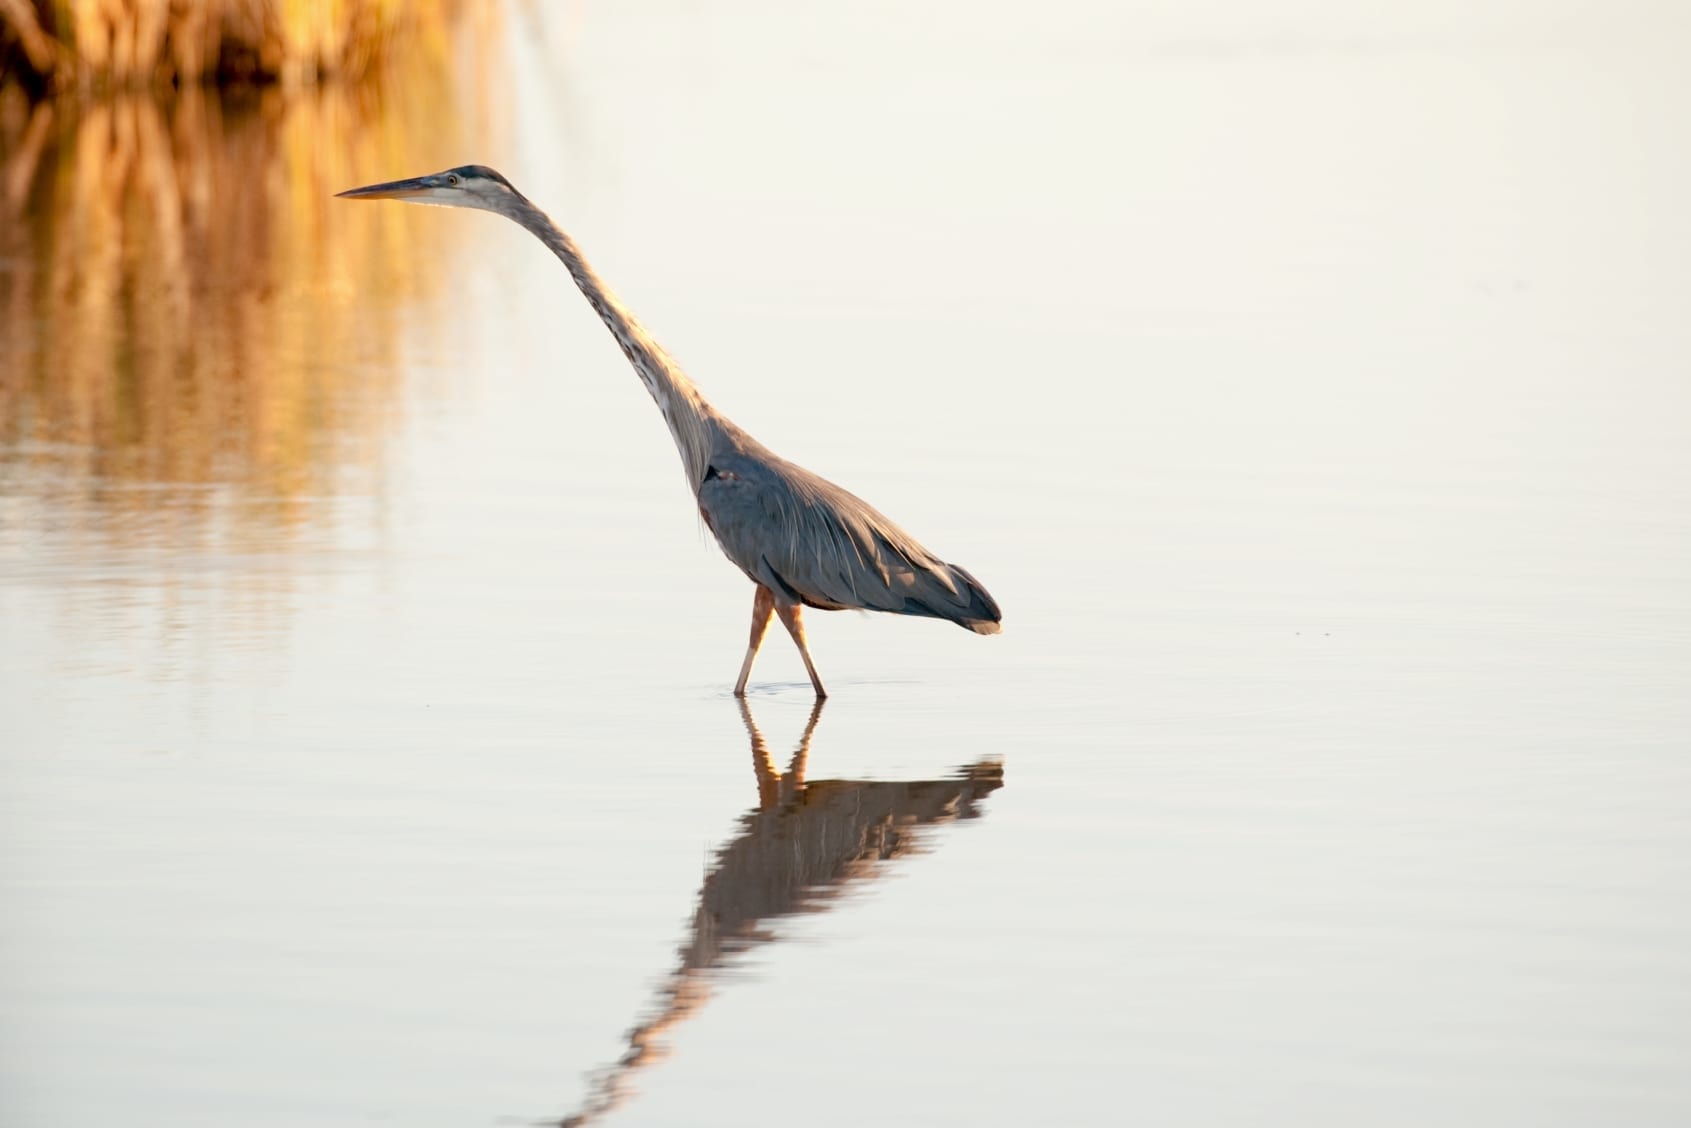 Crane walking in water.